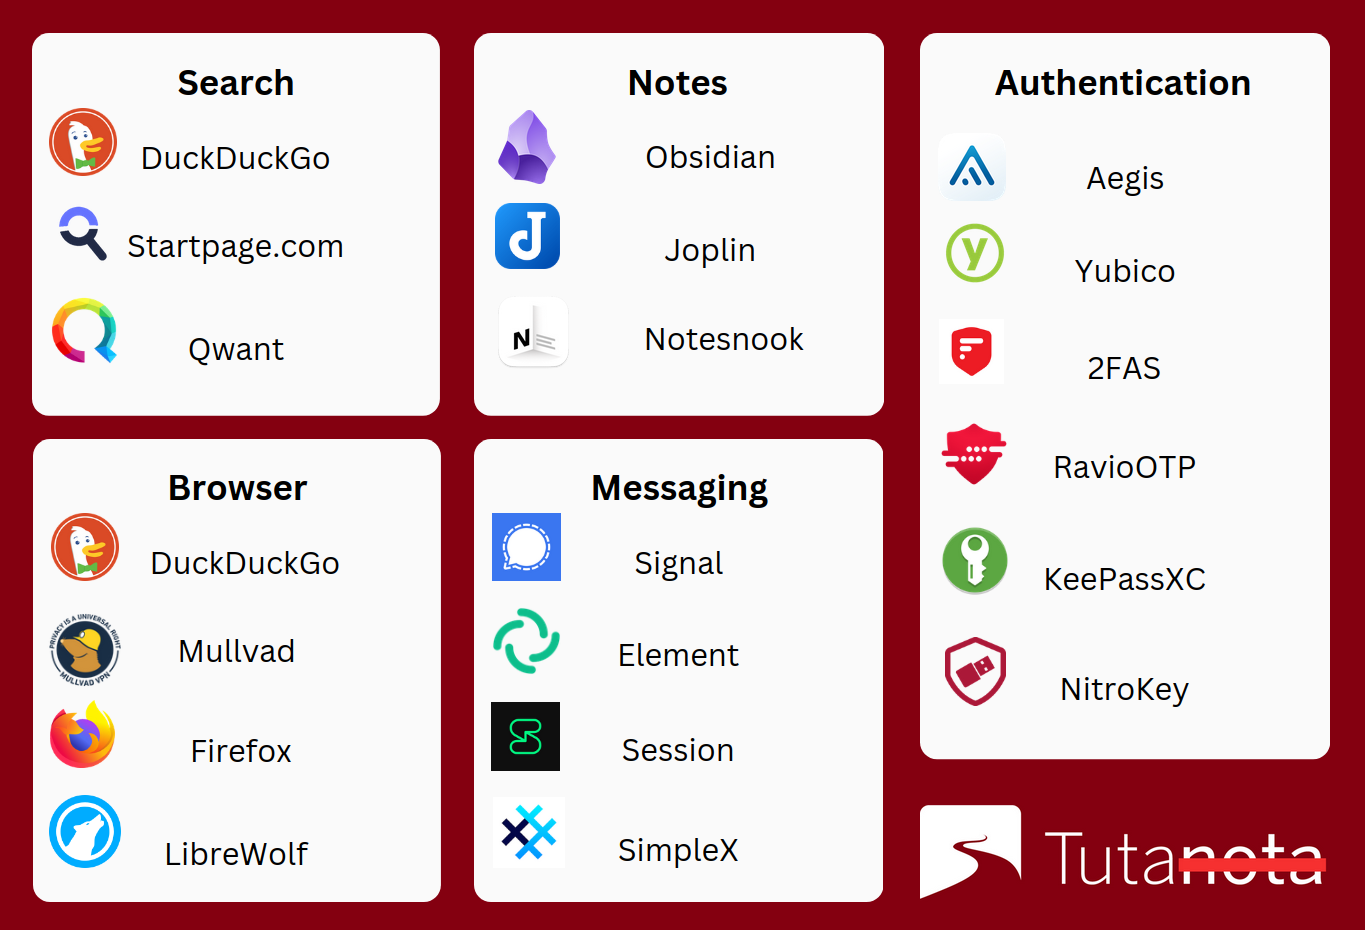 Tuta's privacy focused app recommendations.